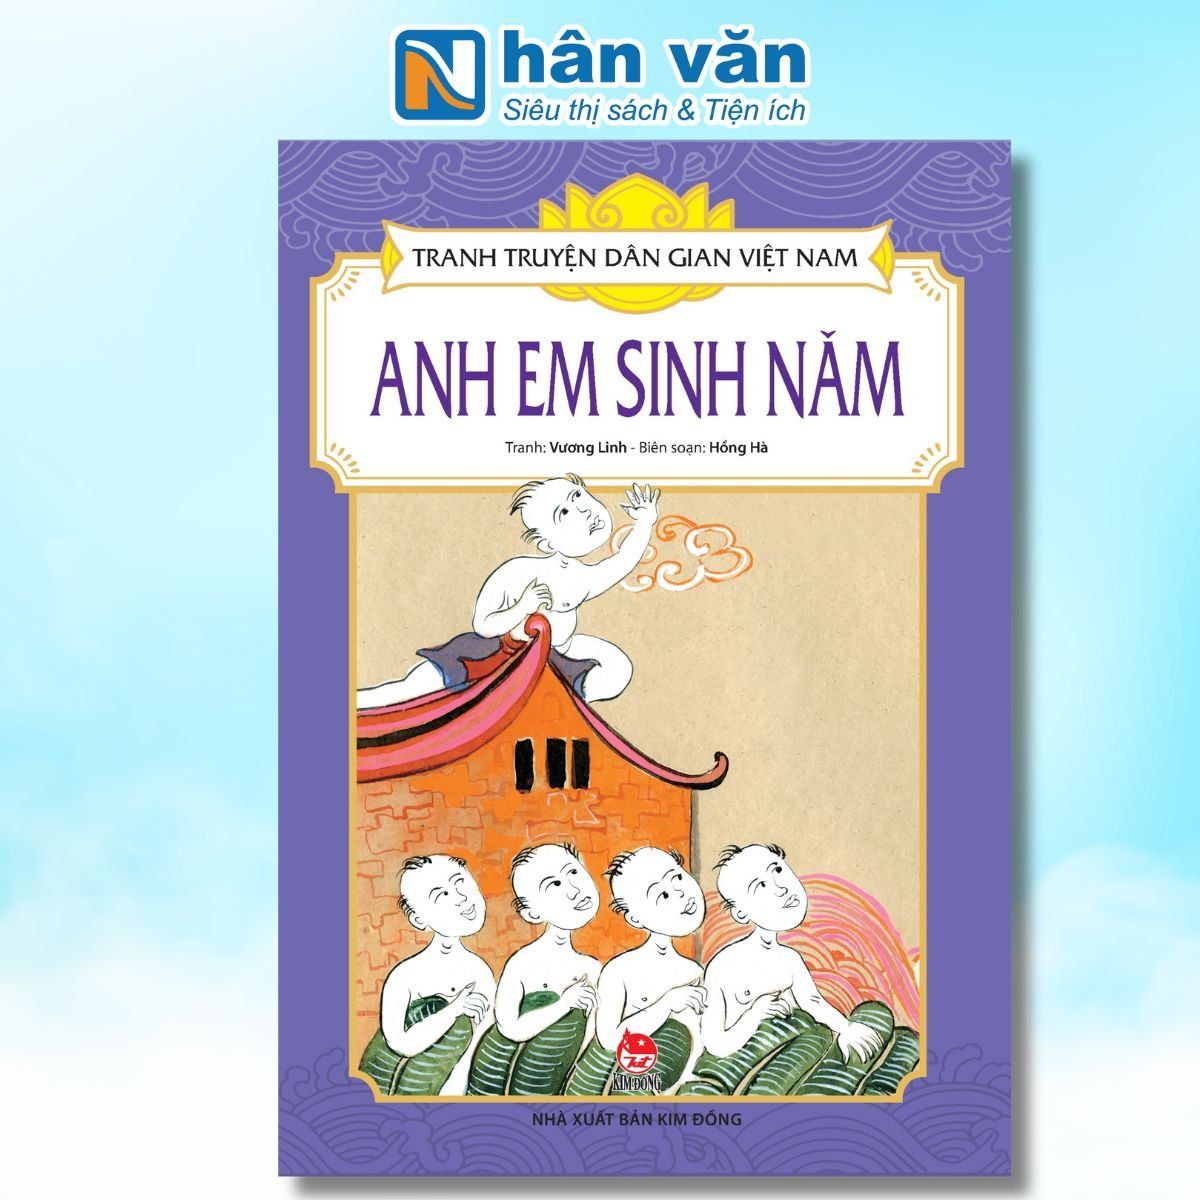  Tranh Truyện Dân Gian Việt Nam - Anh Em Sinh Năm 